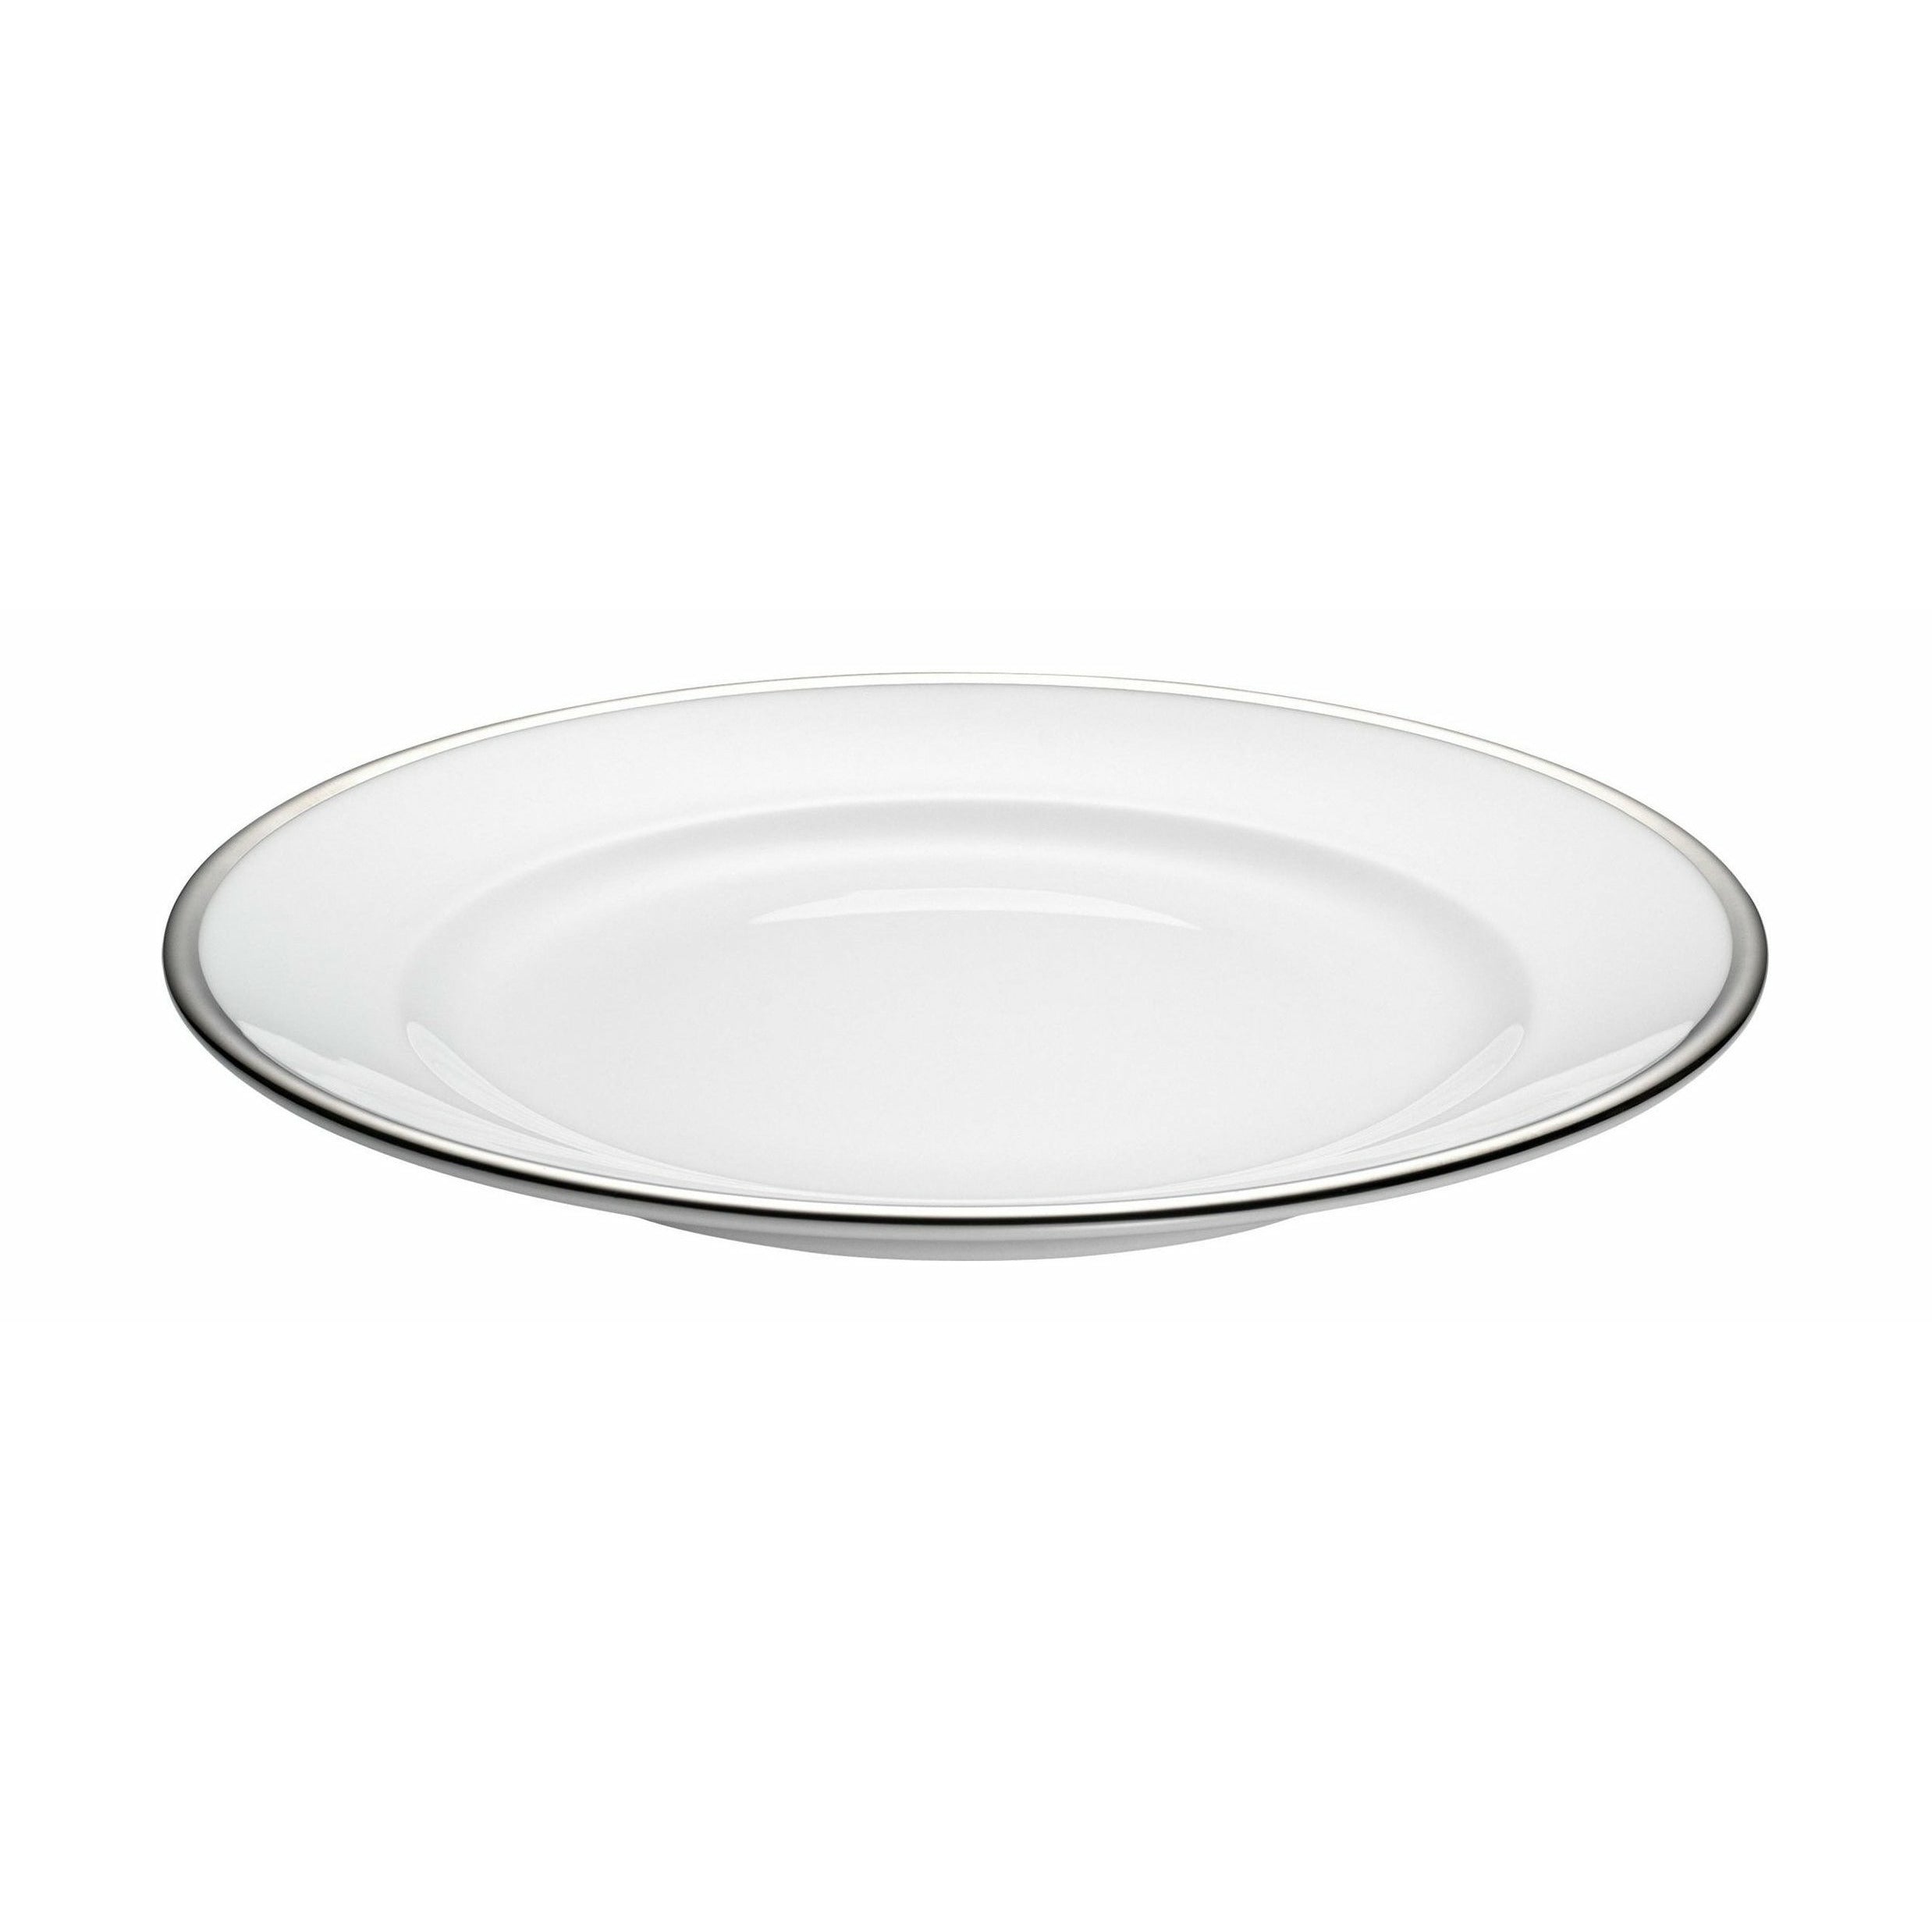 Assiette de bistrot Pillivuyt Ø 21 cm, blanc / argent